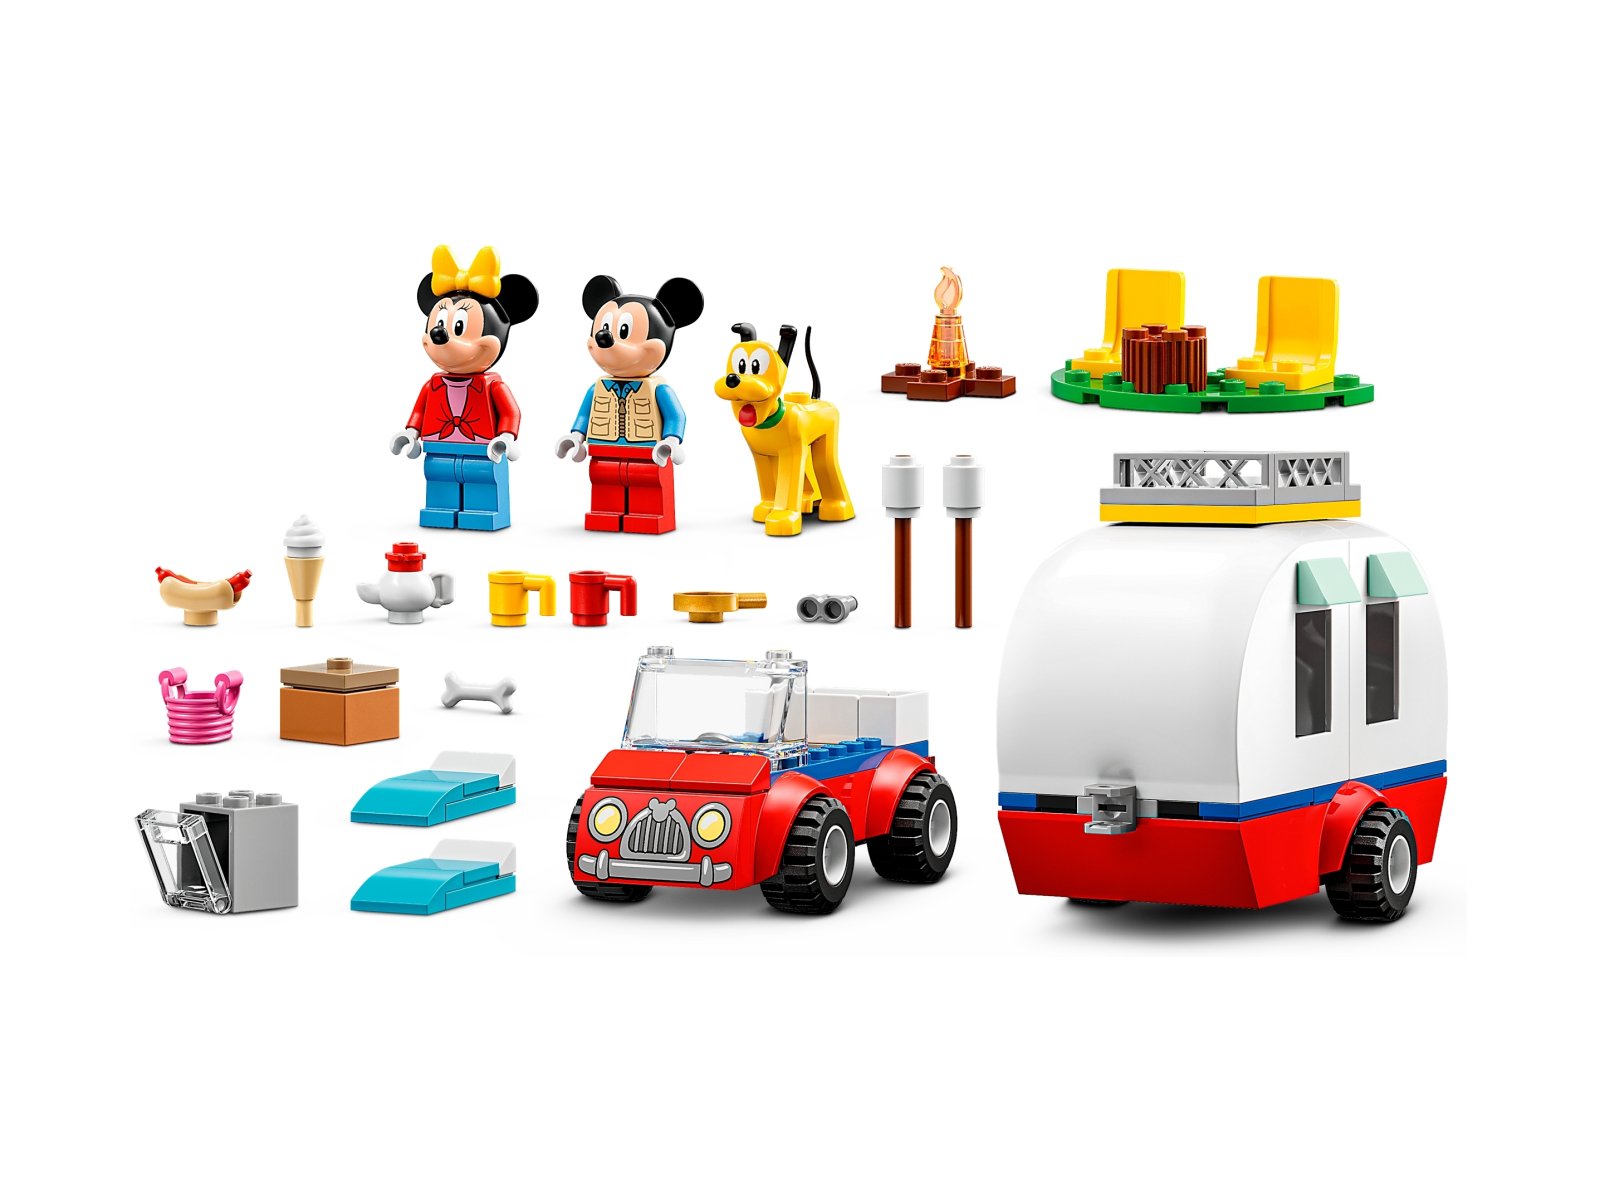 LEGO Disney 10777 Myszka Miki i Myszka Minnie na biwaku